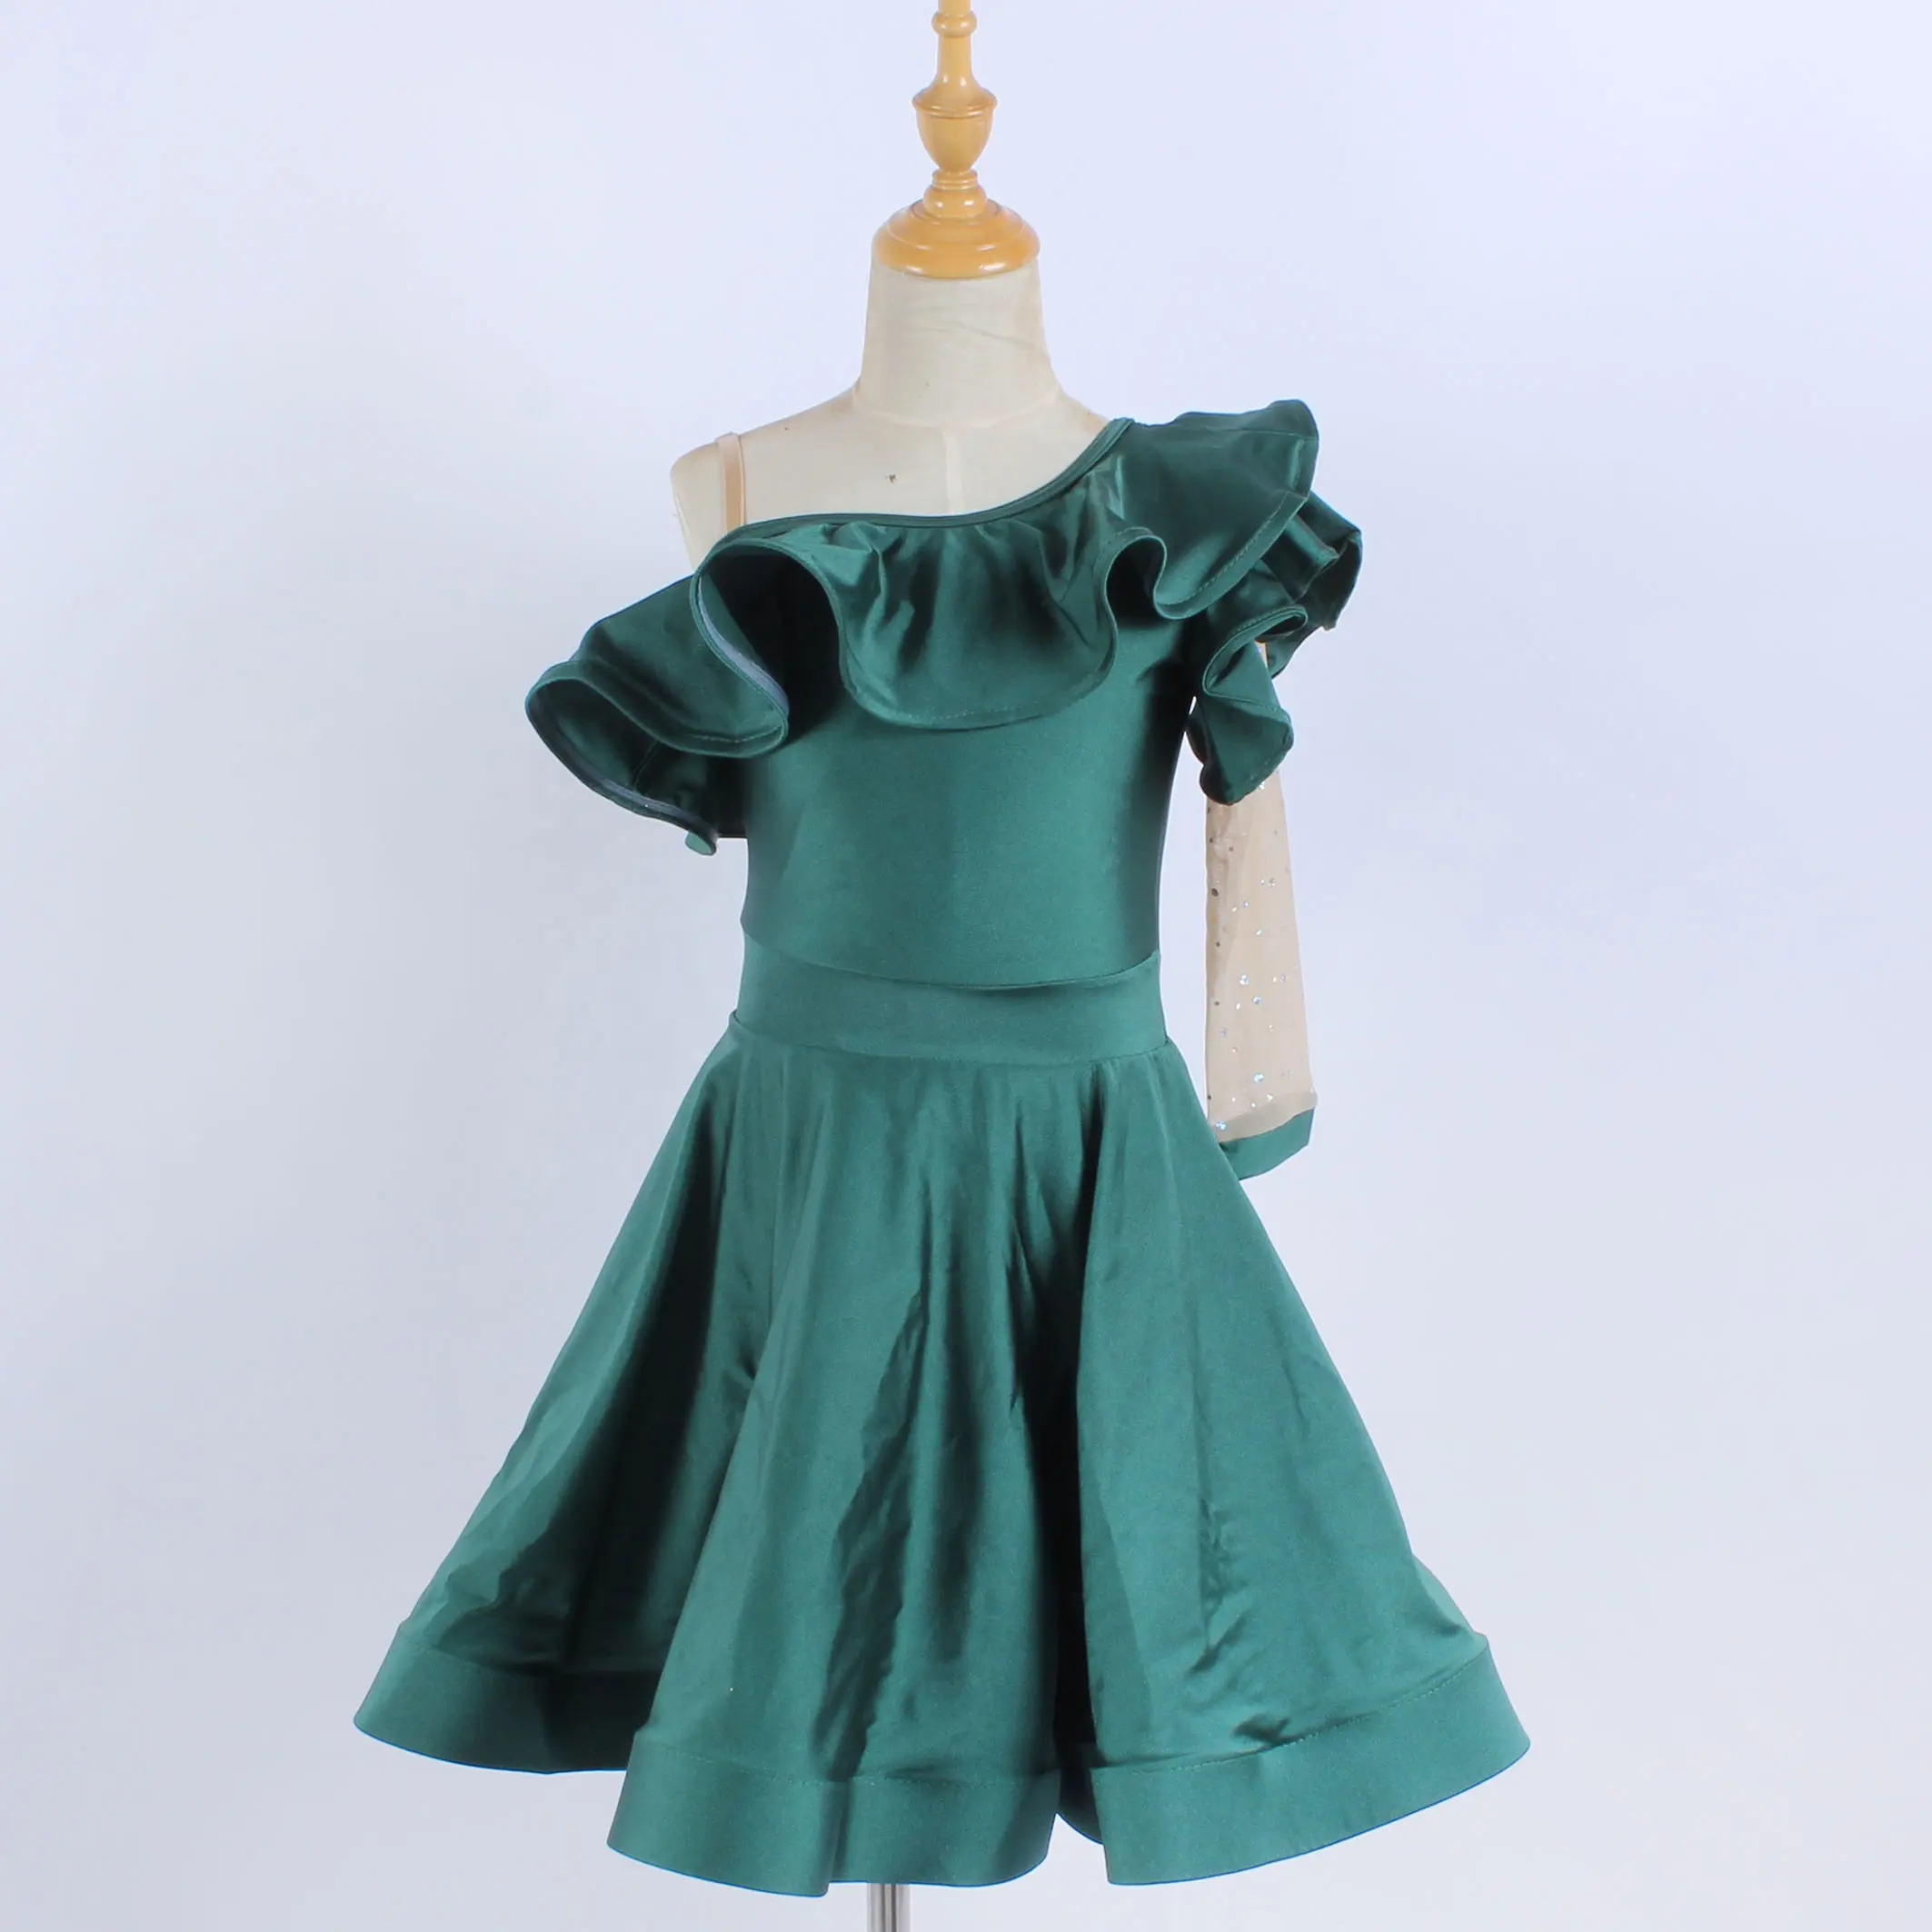 Зеленое танцевальное платье из спандекса, красивый костюм для латиноамериканских танцев с агарическими краями, одежда для выступлений и джазовых танцев